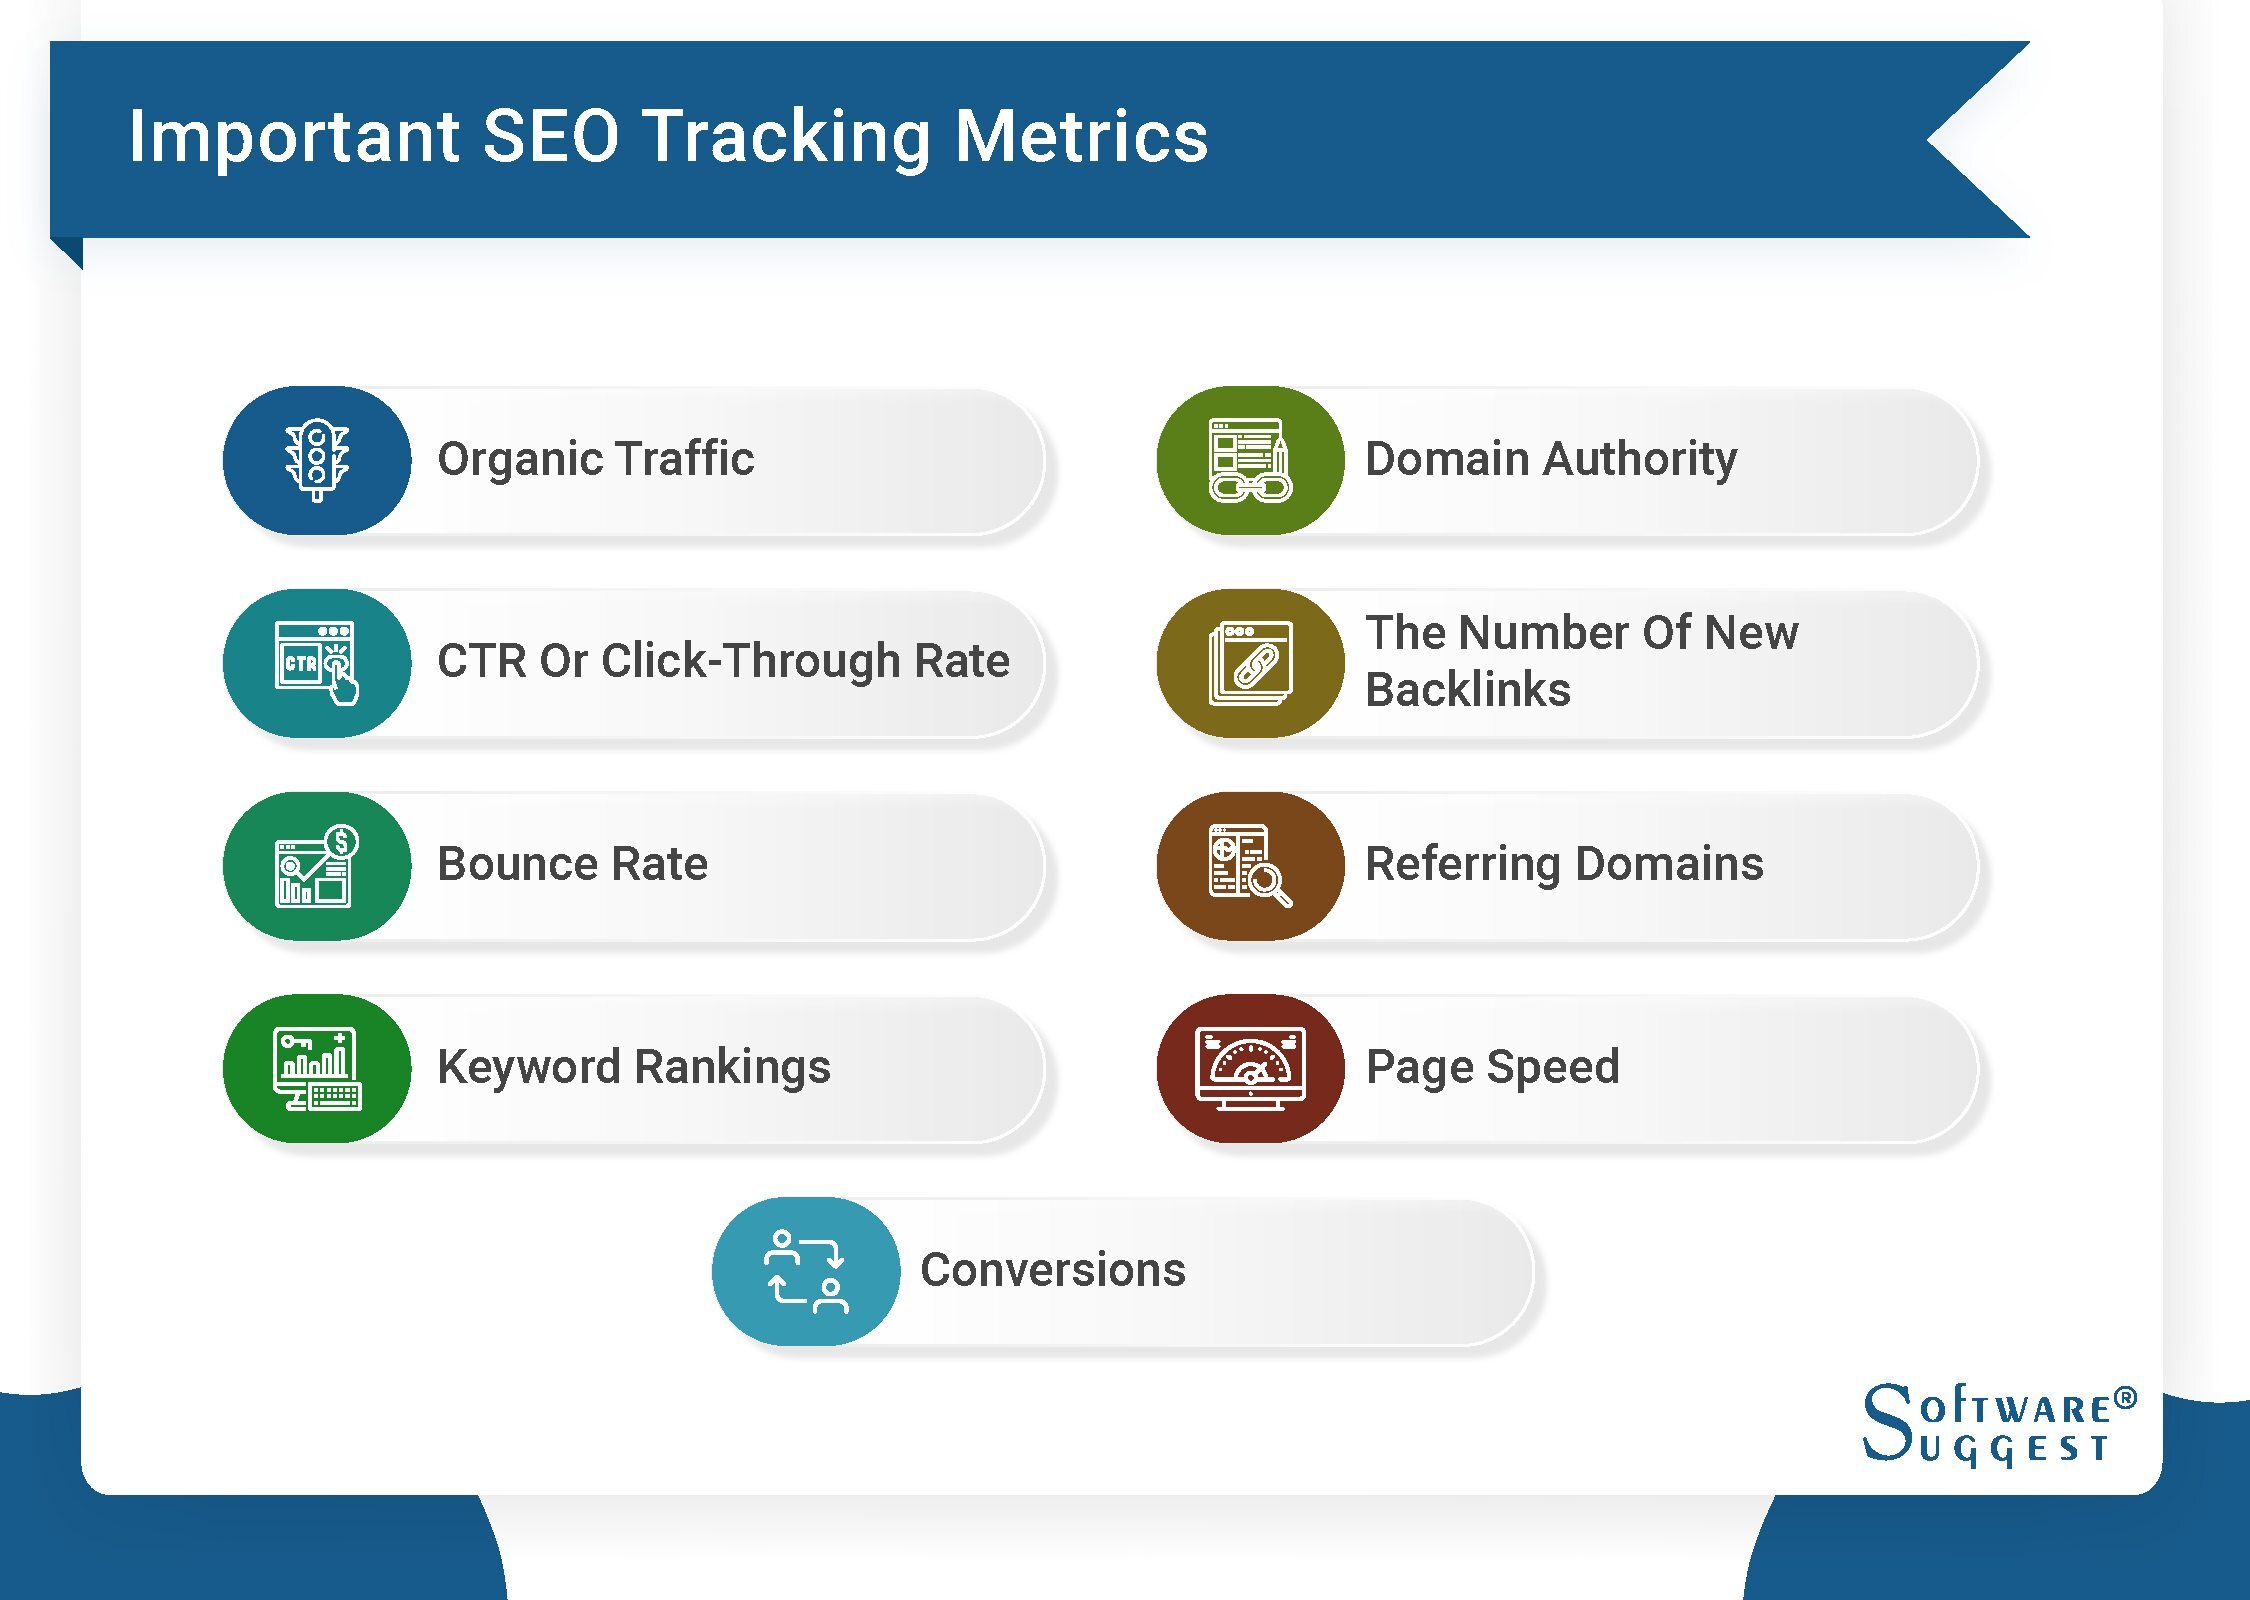 SEO tracking metrics